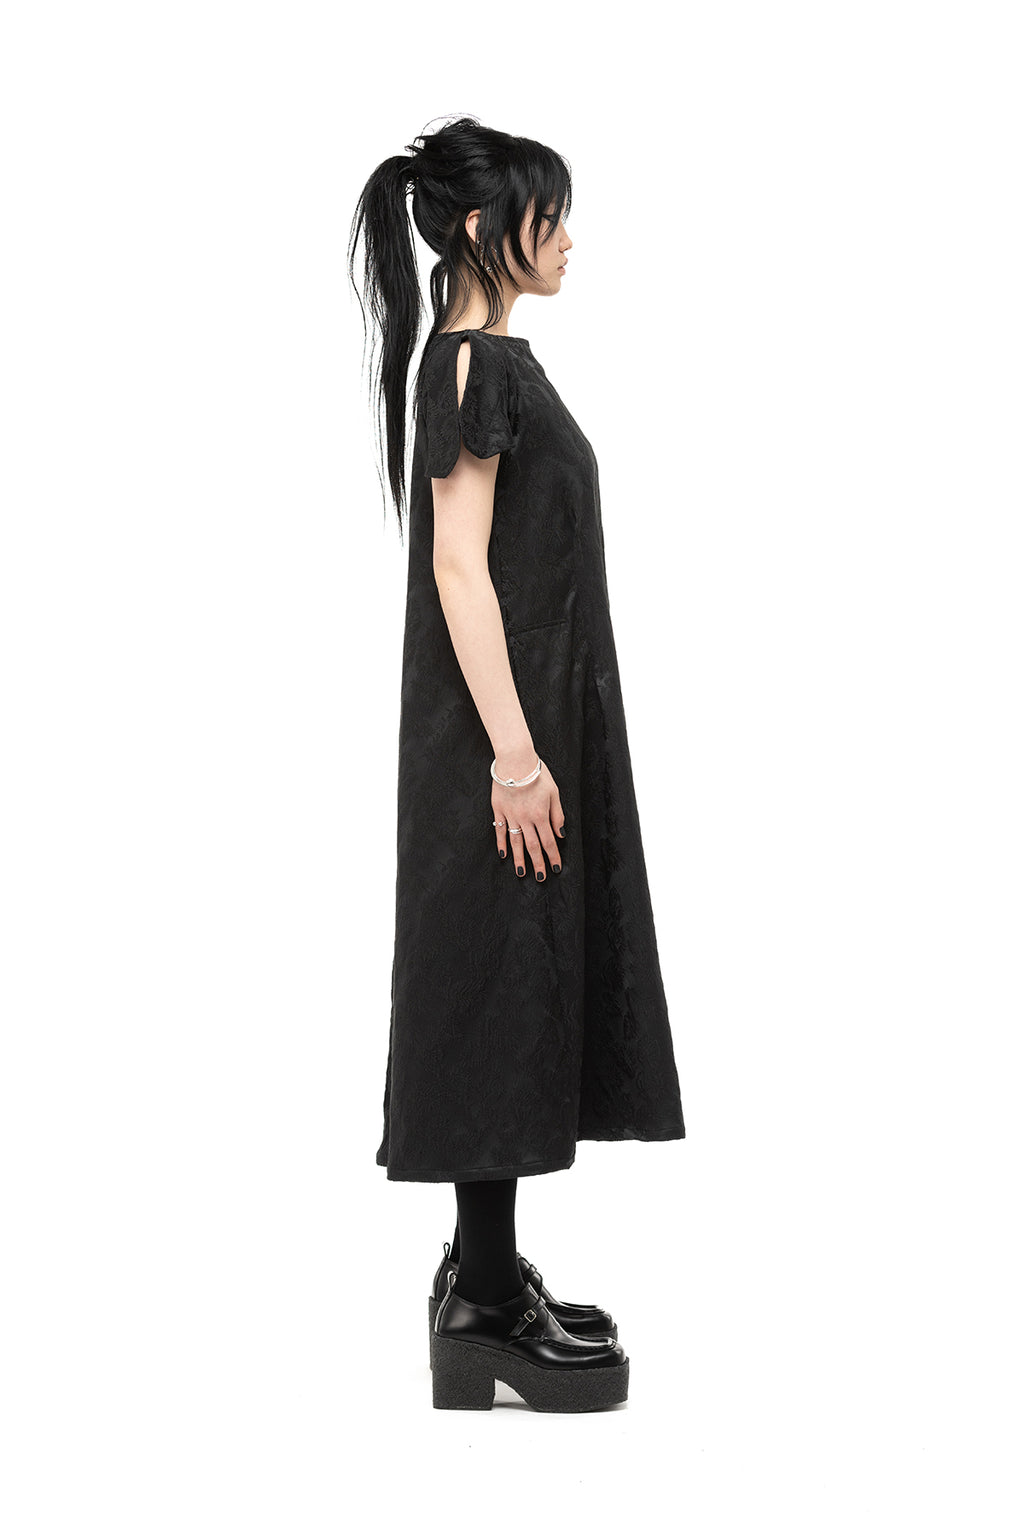 NOMD DOUBLE VISION DRESS-BLACK LEAF